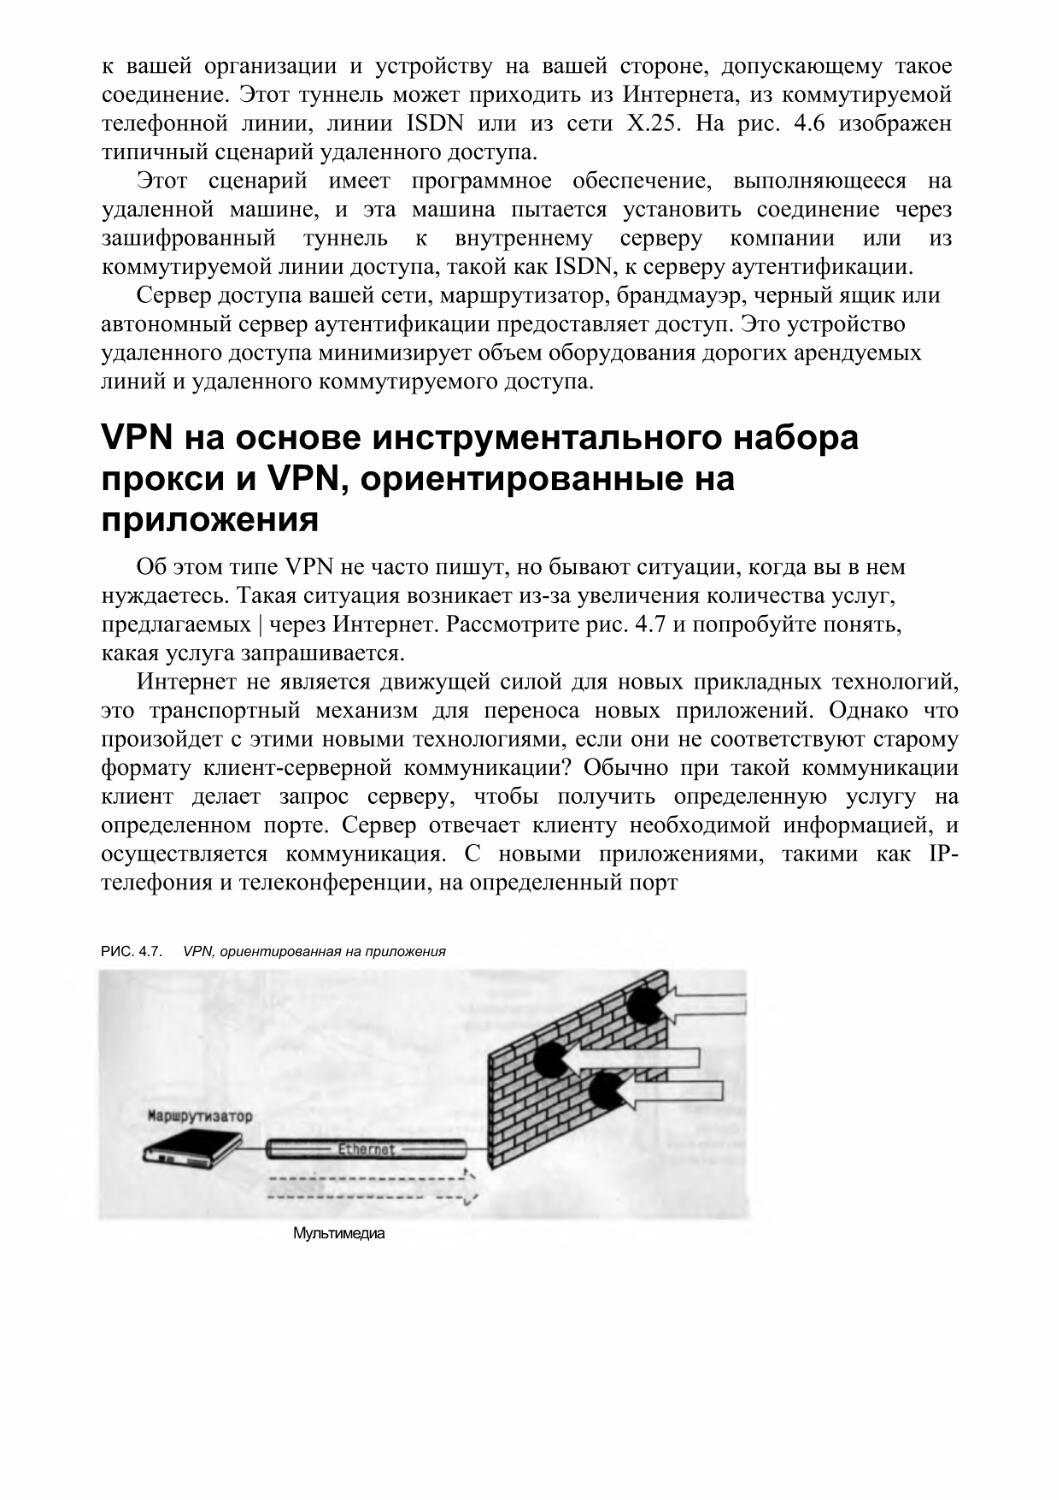 VPN на основе инструментального набора прокси и VPN, ориентированные на приложения